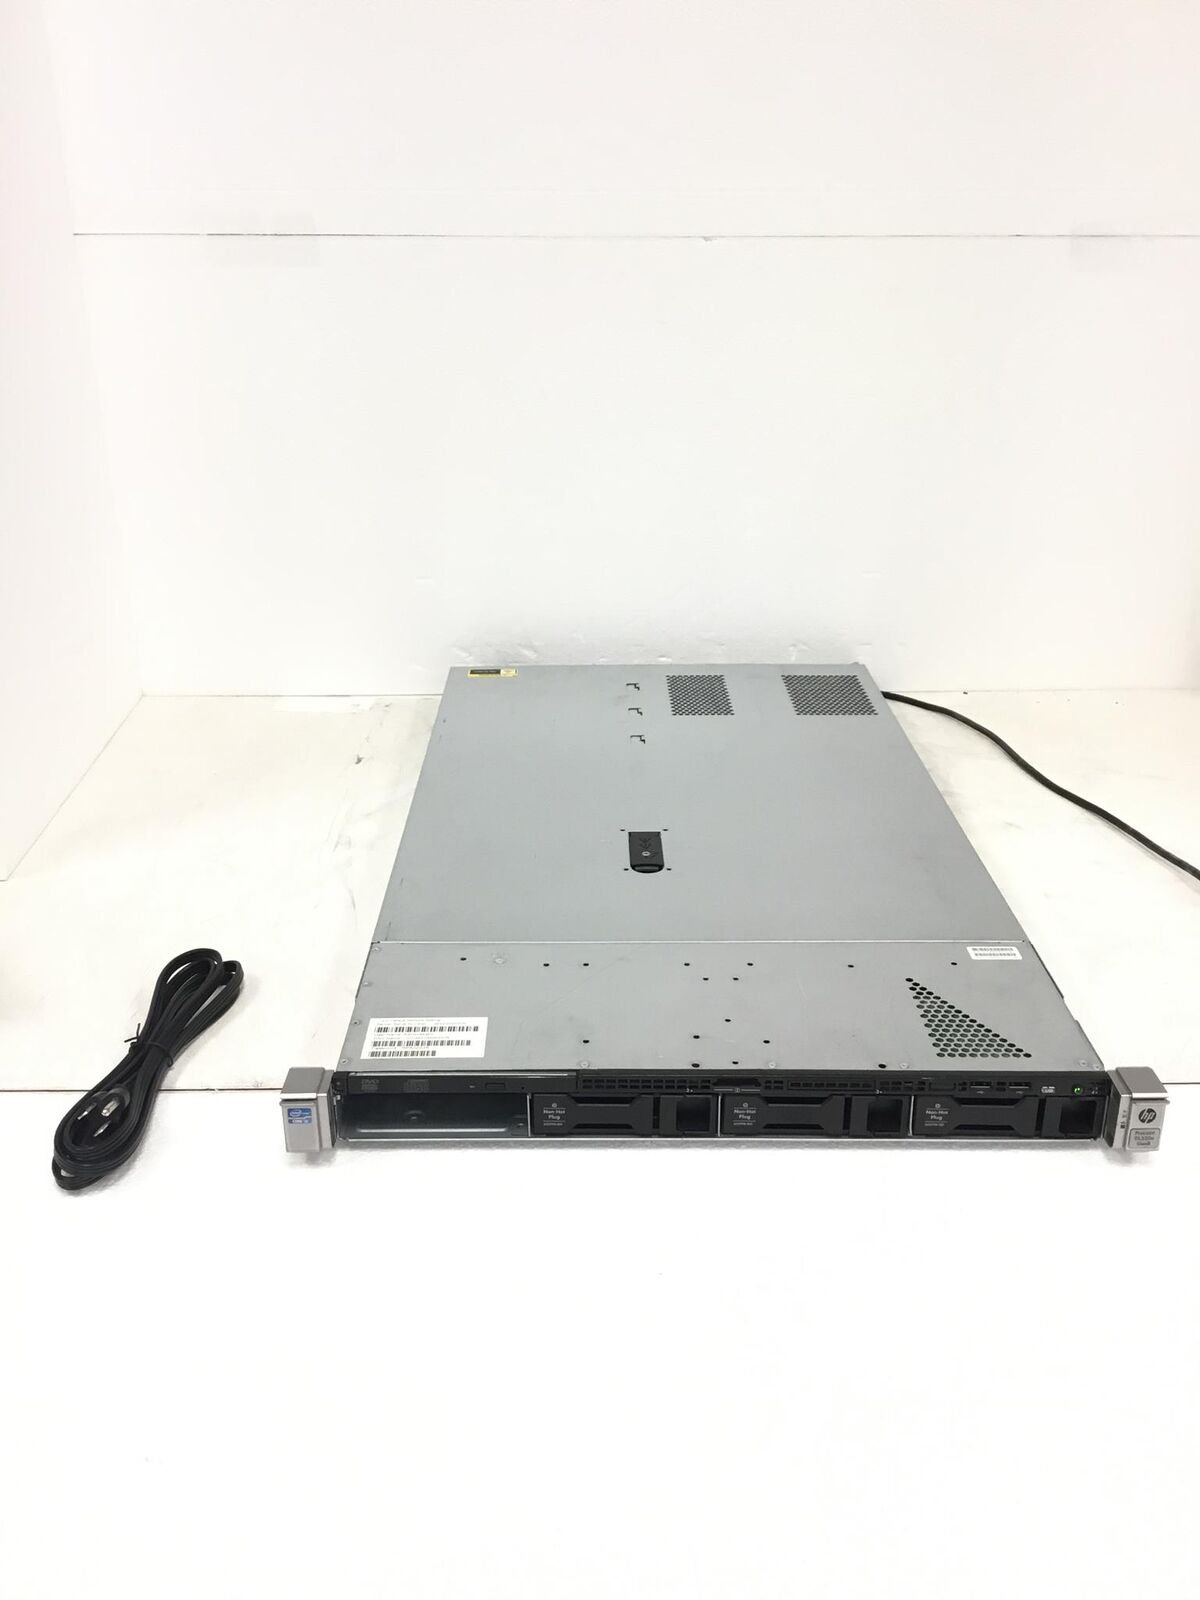 HP Proliant DL320E Gen8 i3 3.40Ghz Server with Smart Array B120i Raid, no HDD